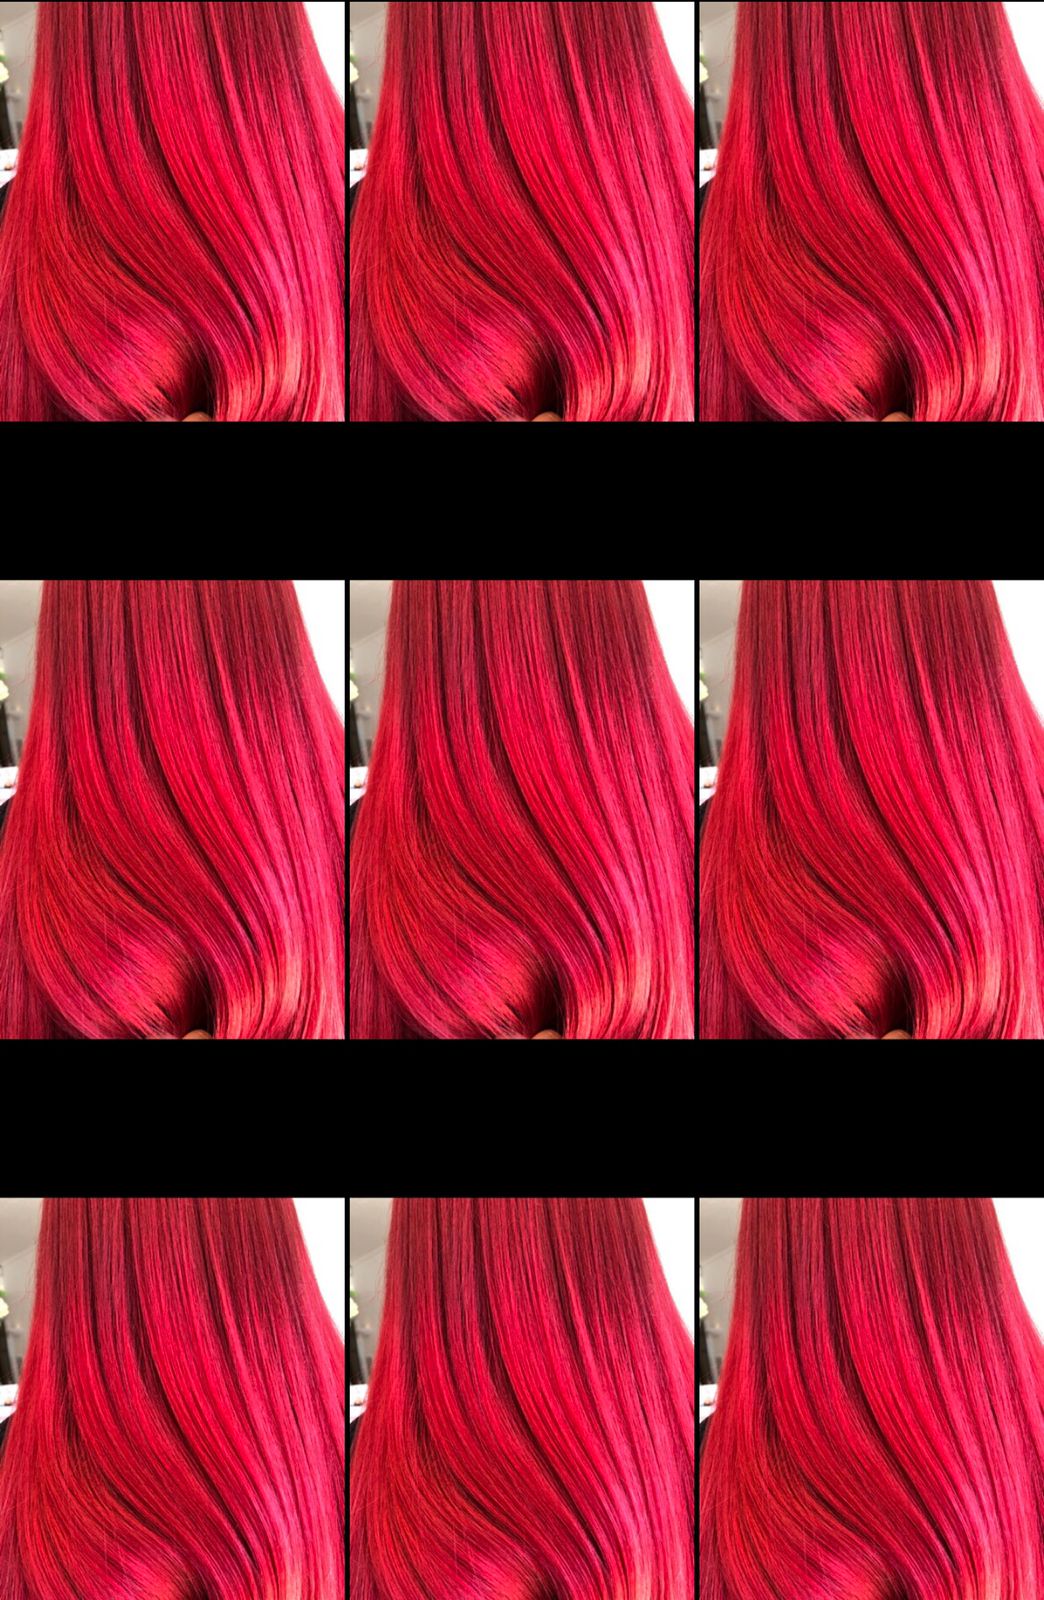 Award-winning Red Hair Salons in Rye & Hastings